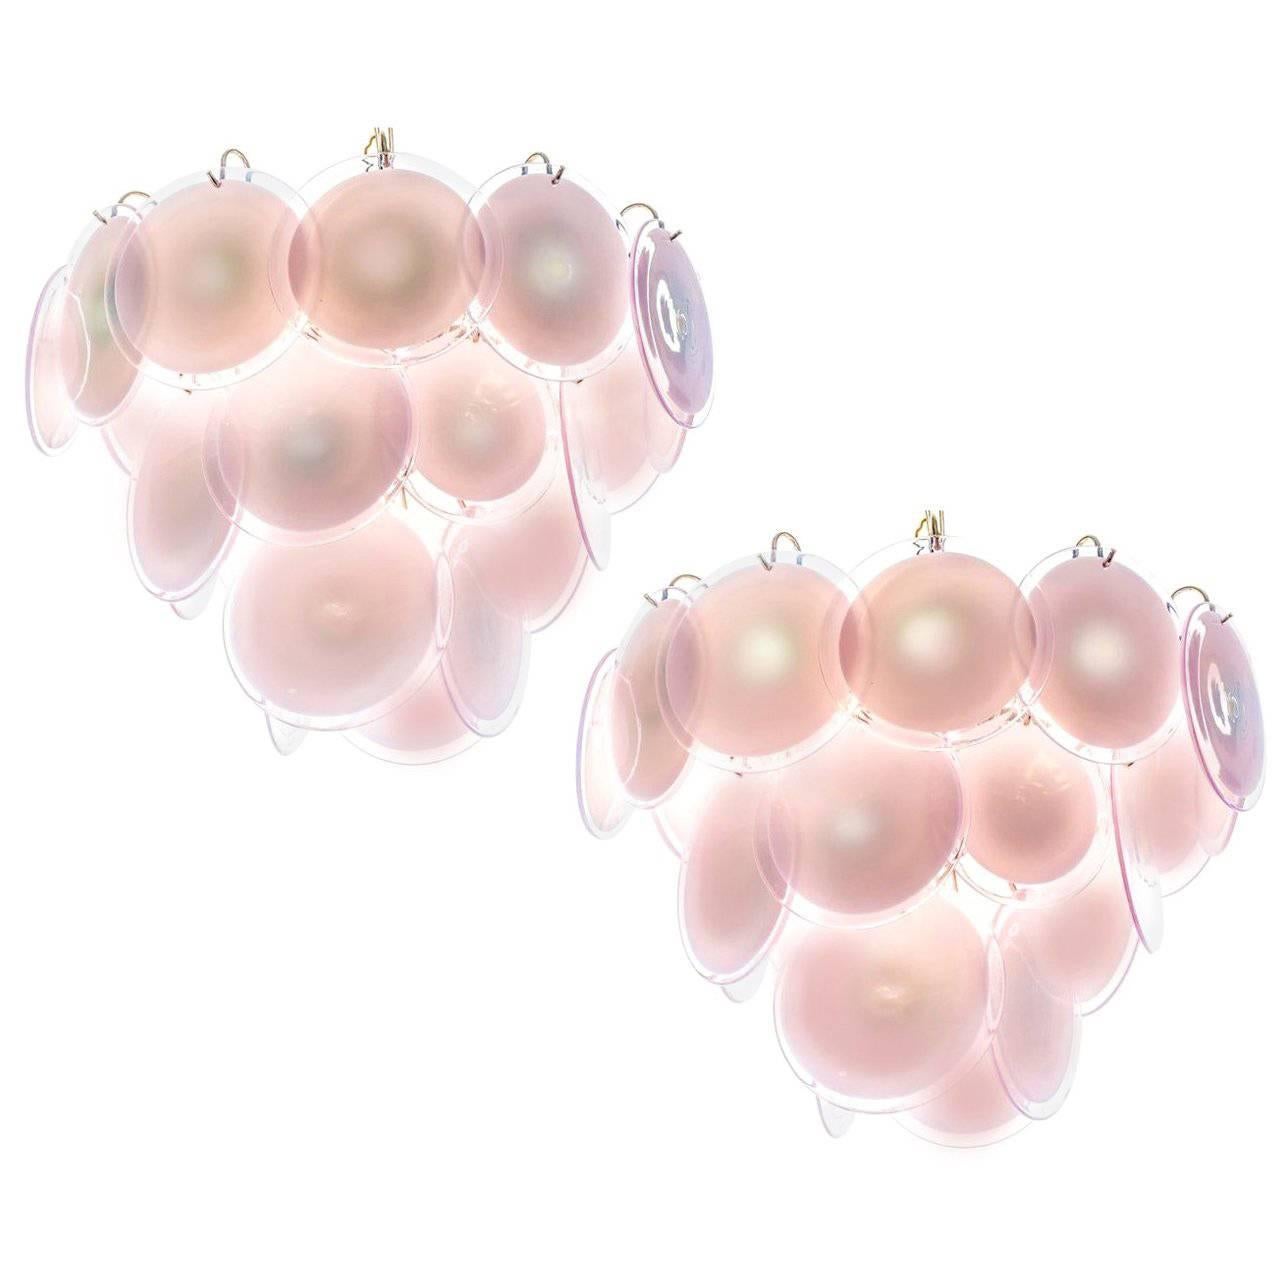 Spektakuläres Paar Kronleuchter von Vistosi aus Murano. Jeder Kronleuchter besteht aus 23 rosafarbenen Scheiben aus kostbarem Murano-Glas, die auf dem Boden angeordnet sind. Neunmalklug. Maße: Höhe ohne Kette 50 cm. Auch mit weißen Scheiben